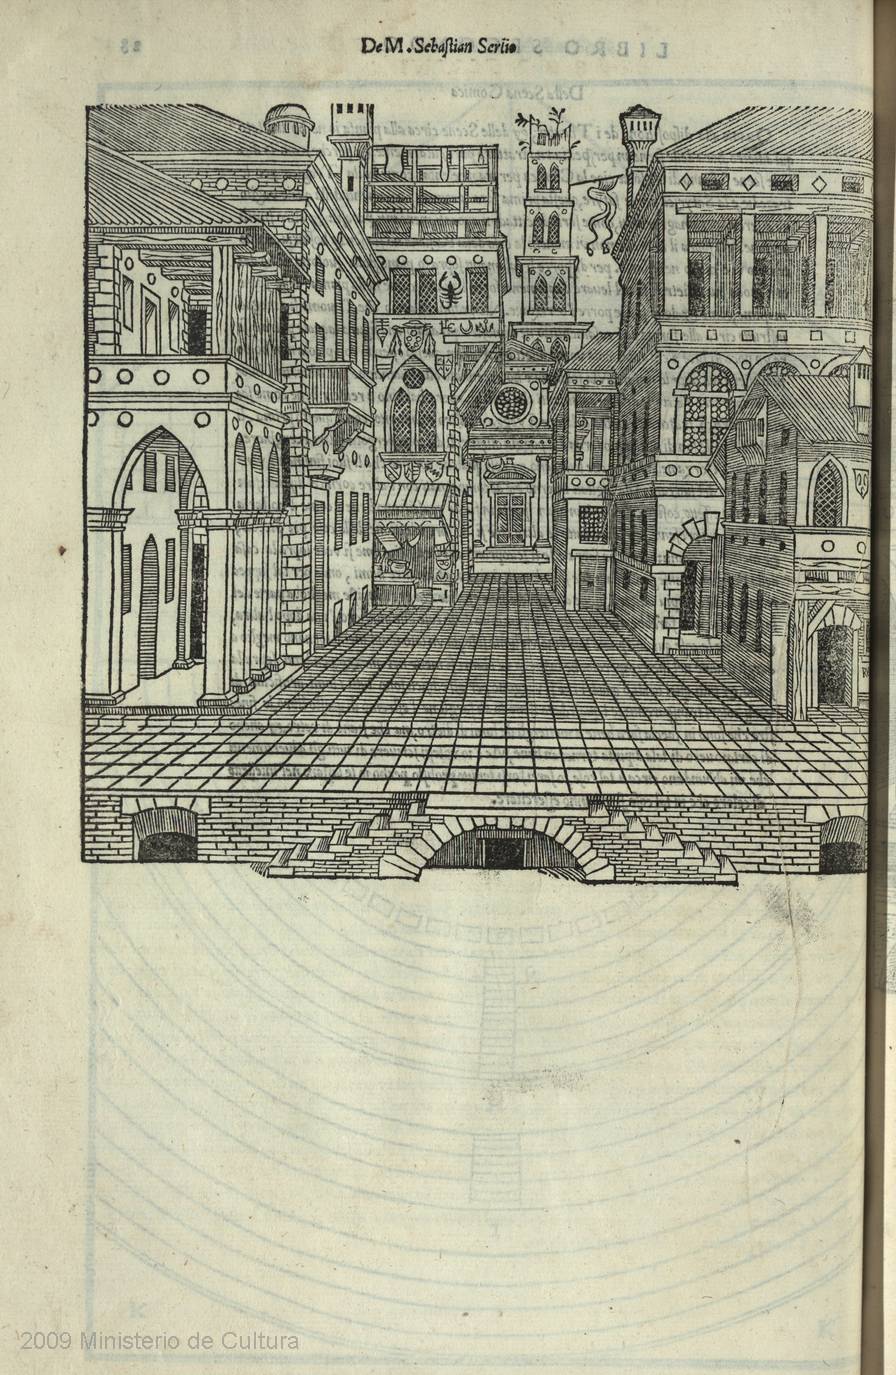 Sebastiano Serlio. 1551. Propuesta de composición escenográfica para escena de temática cómica.